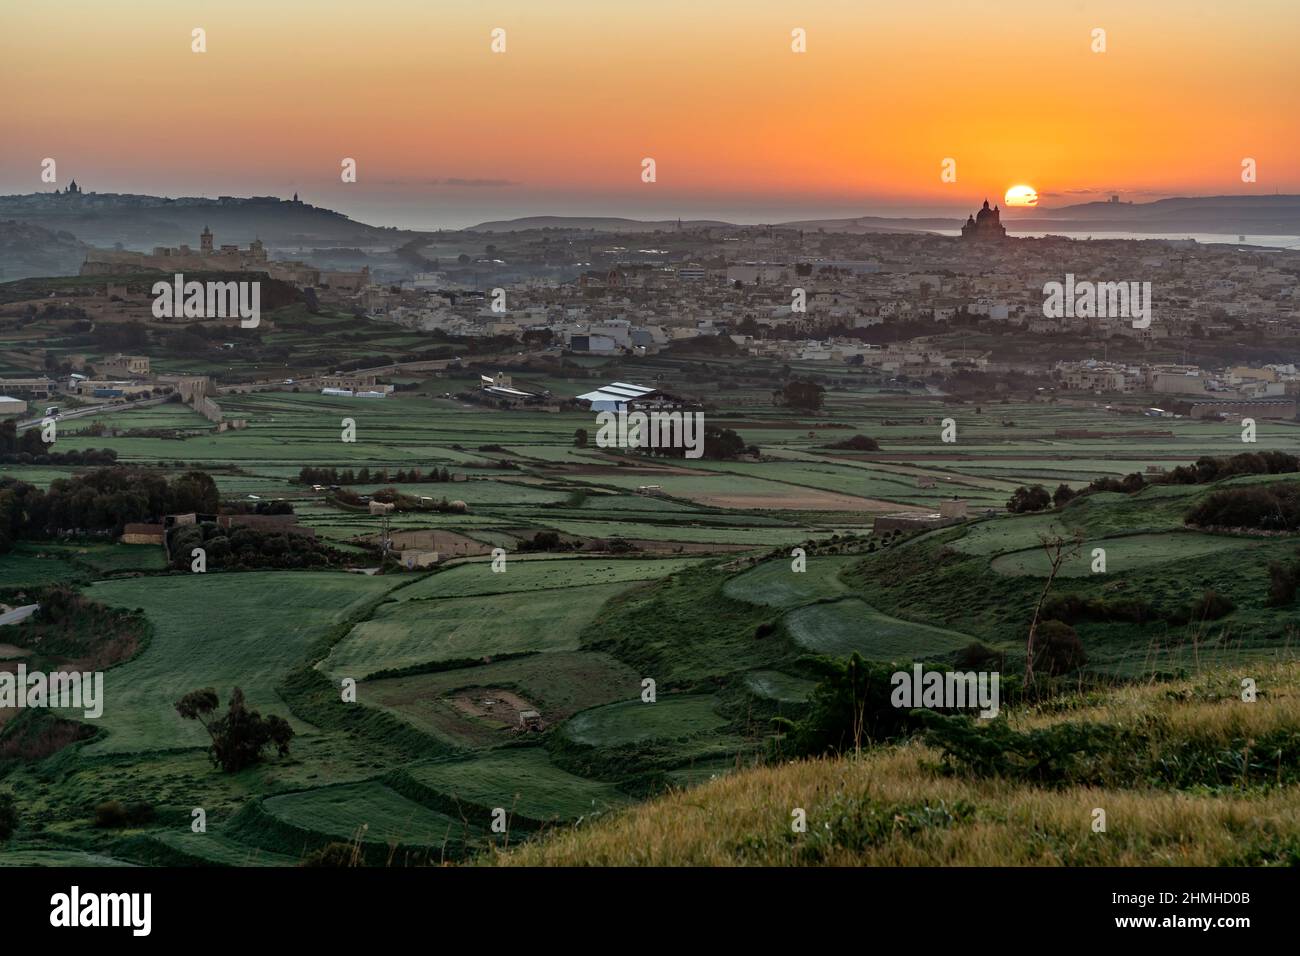 Am letzten Tag des Jahres geht die Morgensonne direkt hinter der Basilika in Goza, Malta, auf und taucht die Landschaft in goldenes Licht. Stockfoto